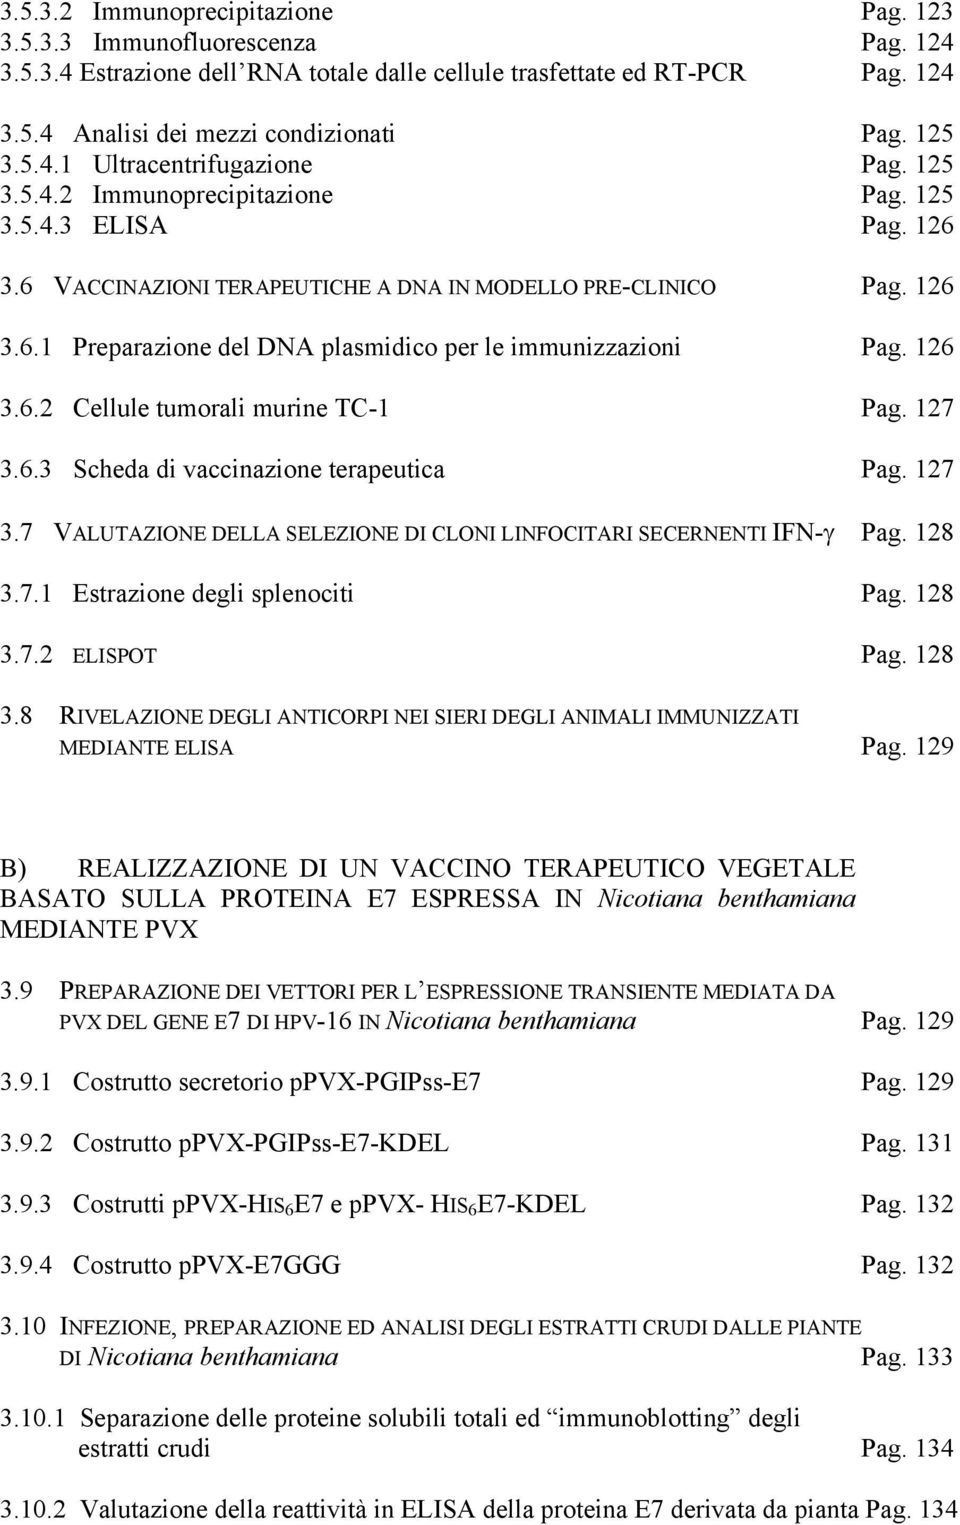 126 3.6.2 Cellule tumorali murine TC-1 Pag. 127 3.6.3 Scheda di vaccinazione terapeutica Pag. 127 3.7 VALUTAZIONE DELLA SELEZIONE DI CLONI LINFOCITARI SECERNENTI IFN-γ Pag. 128 3.7.1 Estrazione degli splenociti Pag.